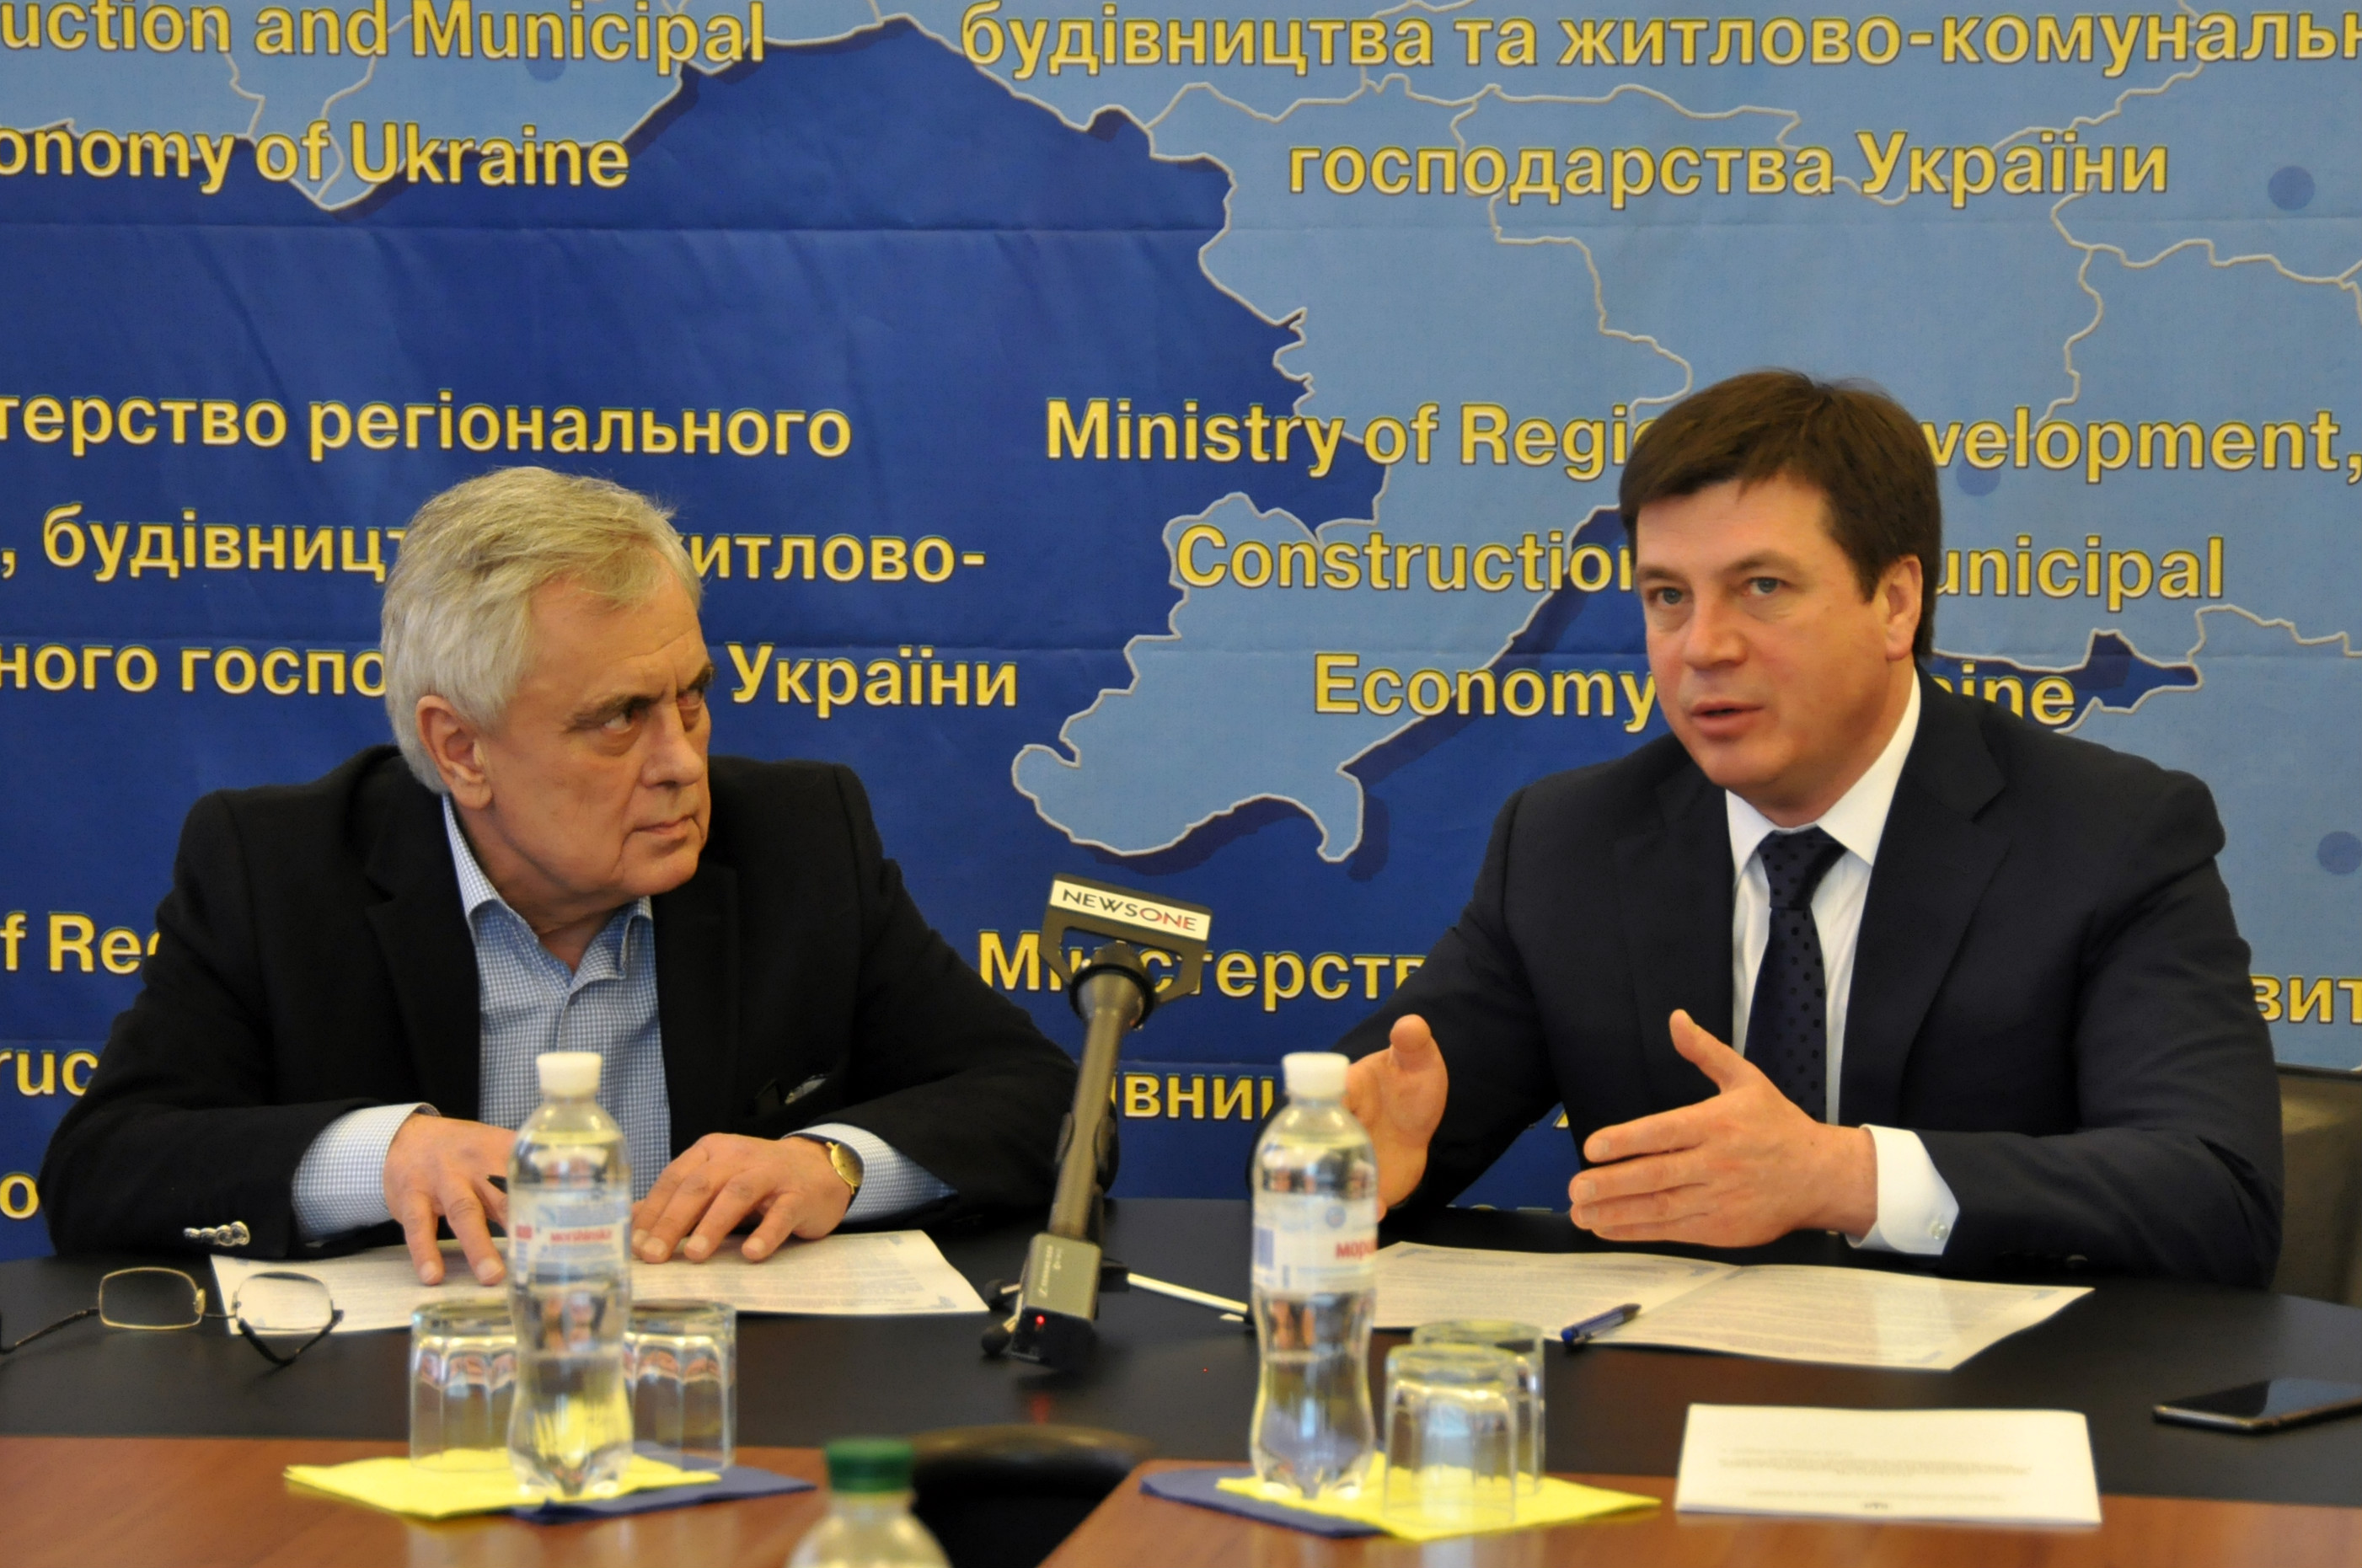 Мінрегіон та АМУ підписали Меморандум про співпрацю заради прискорення децентралізації в Україні